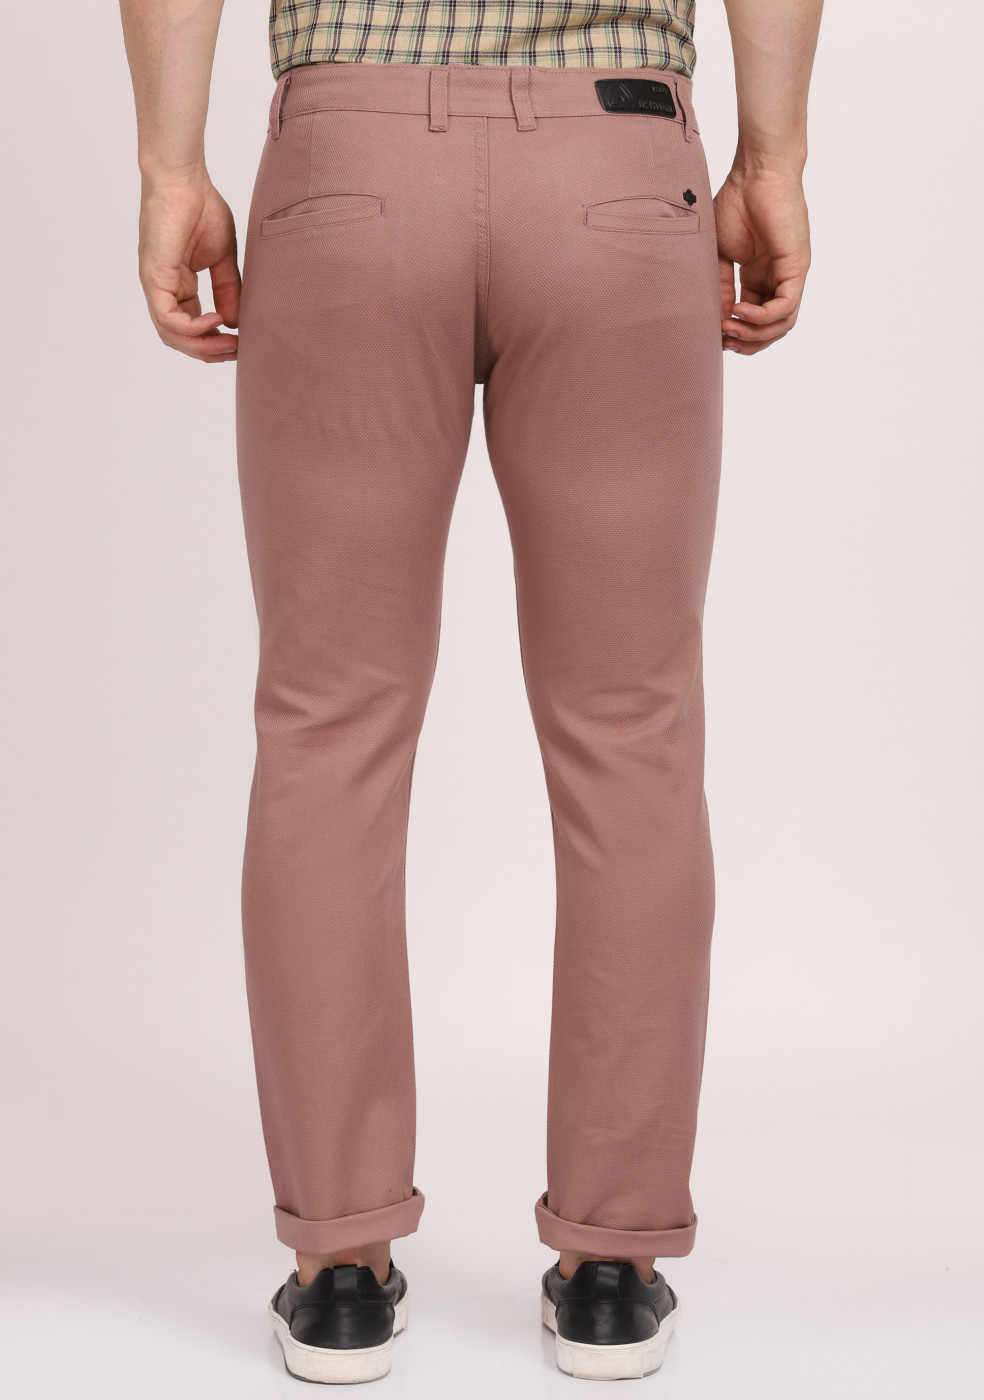 ASHTOM Dusty Pink Formal Cotton Trouser Regular Fit For Men